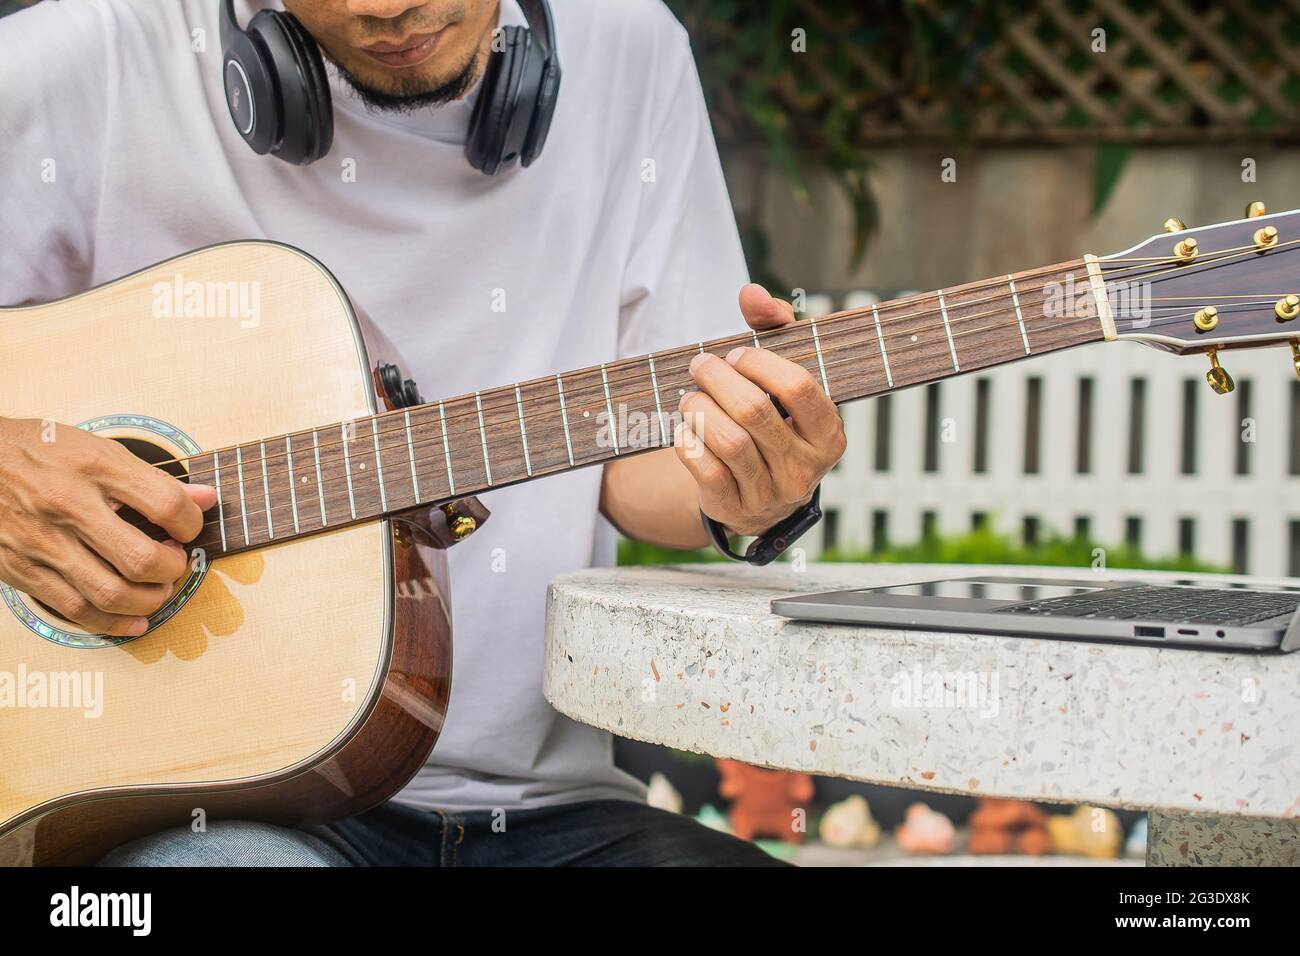 Mann, der zu Hause online Gitarre spielen lernt Stockfotografie - Alamy